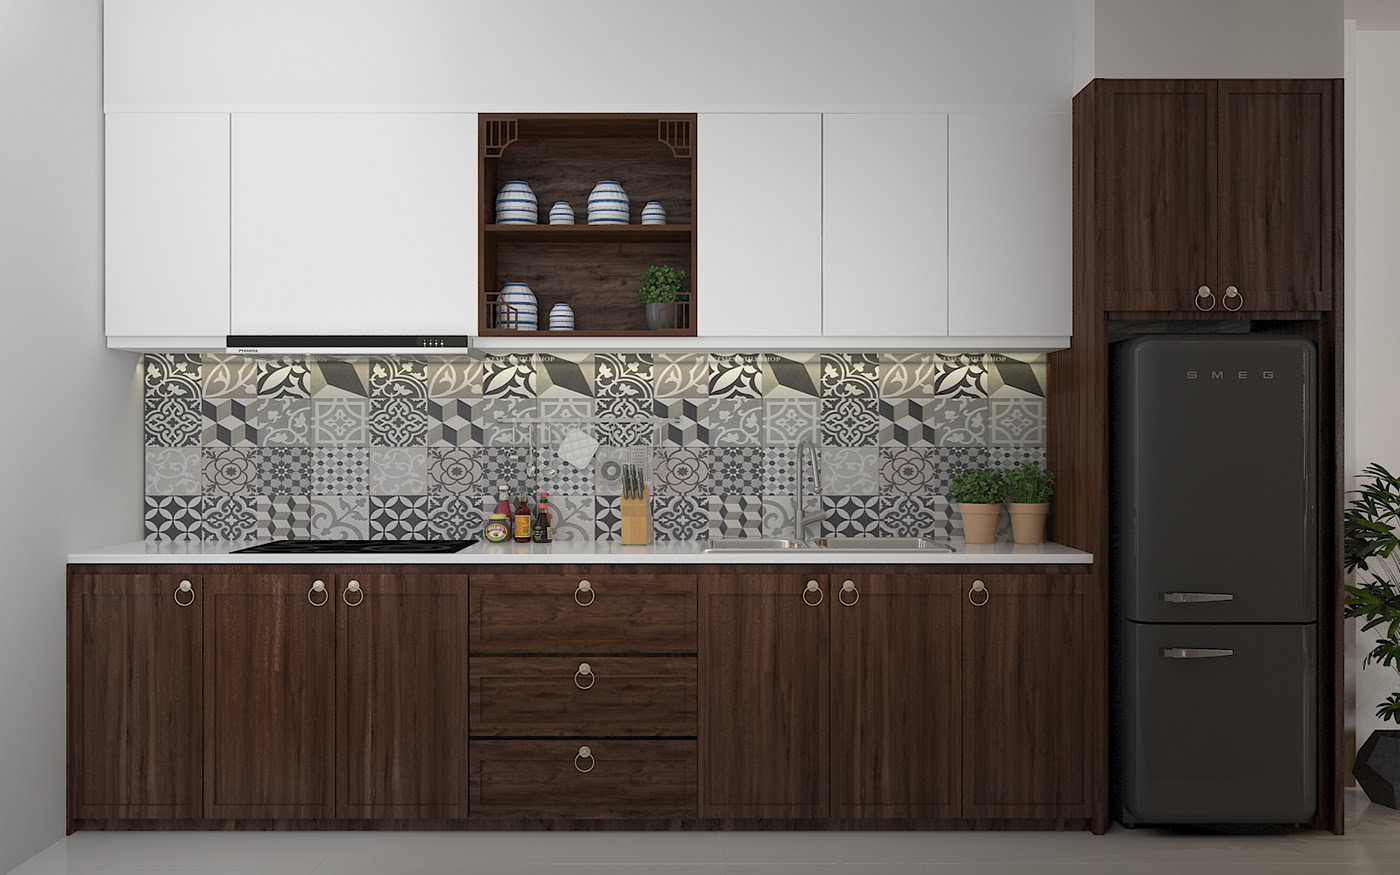 Thiết kế nội thất phong cách Indochine cho phòng bếp